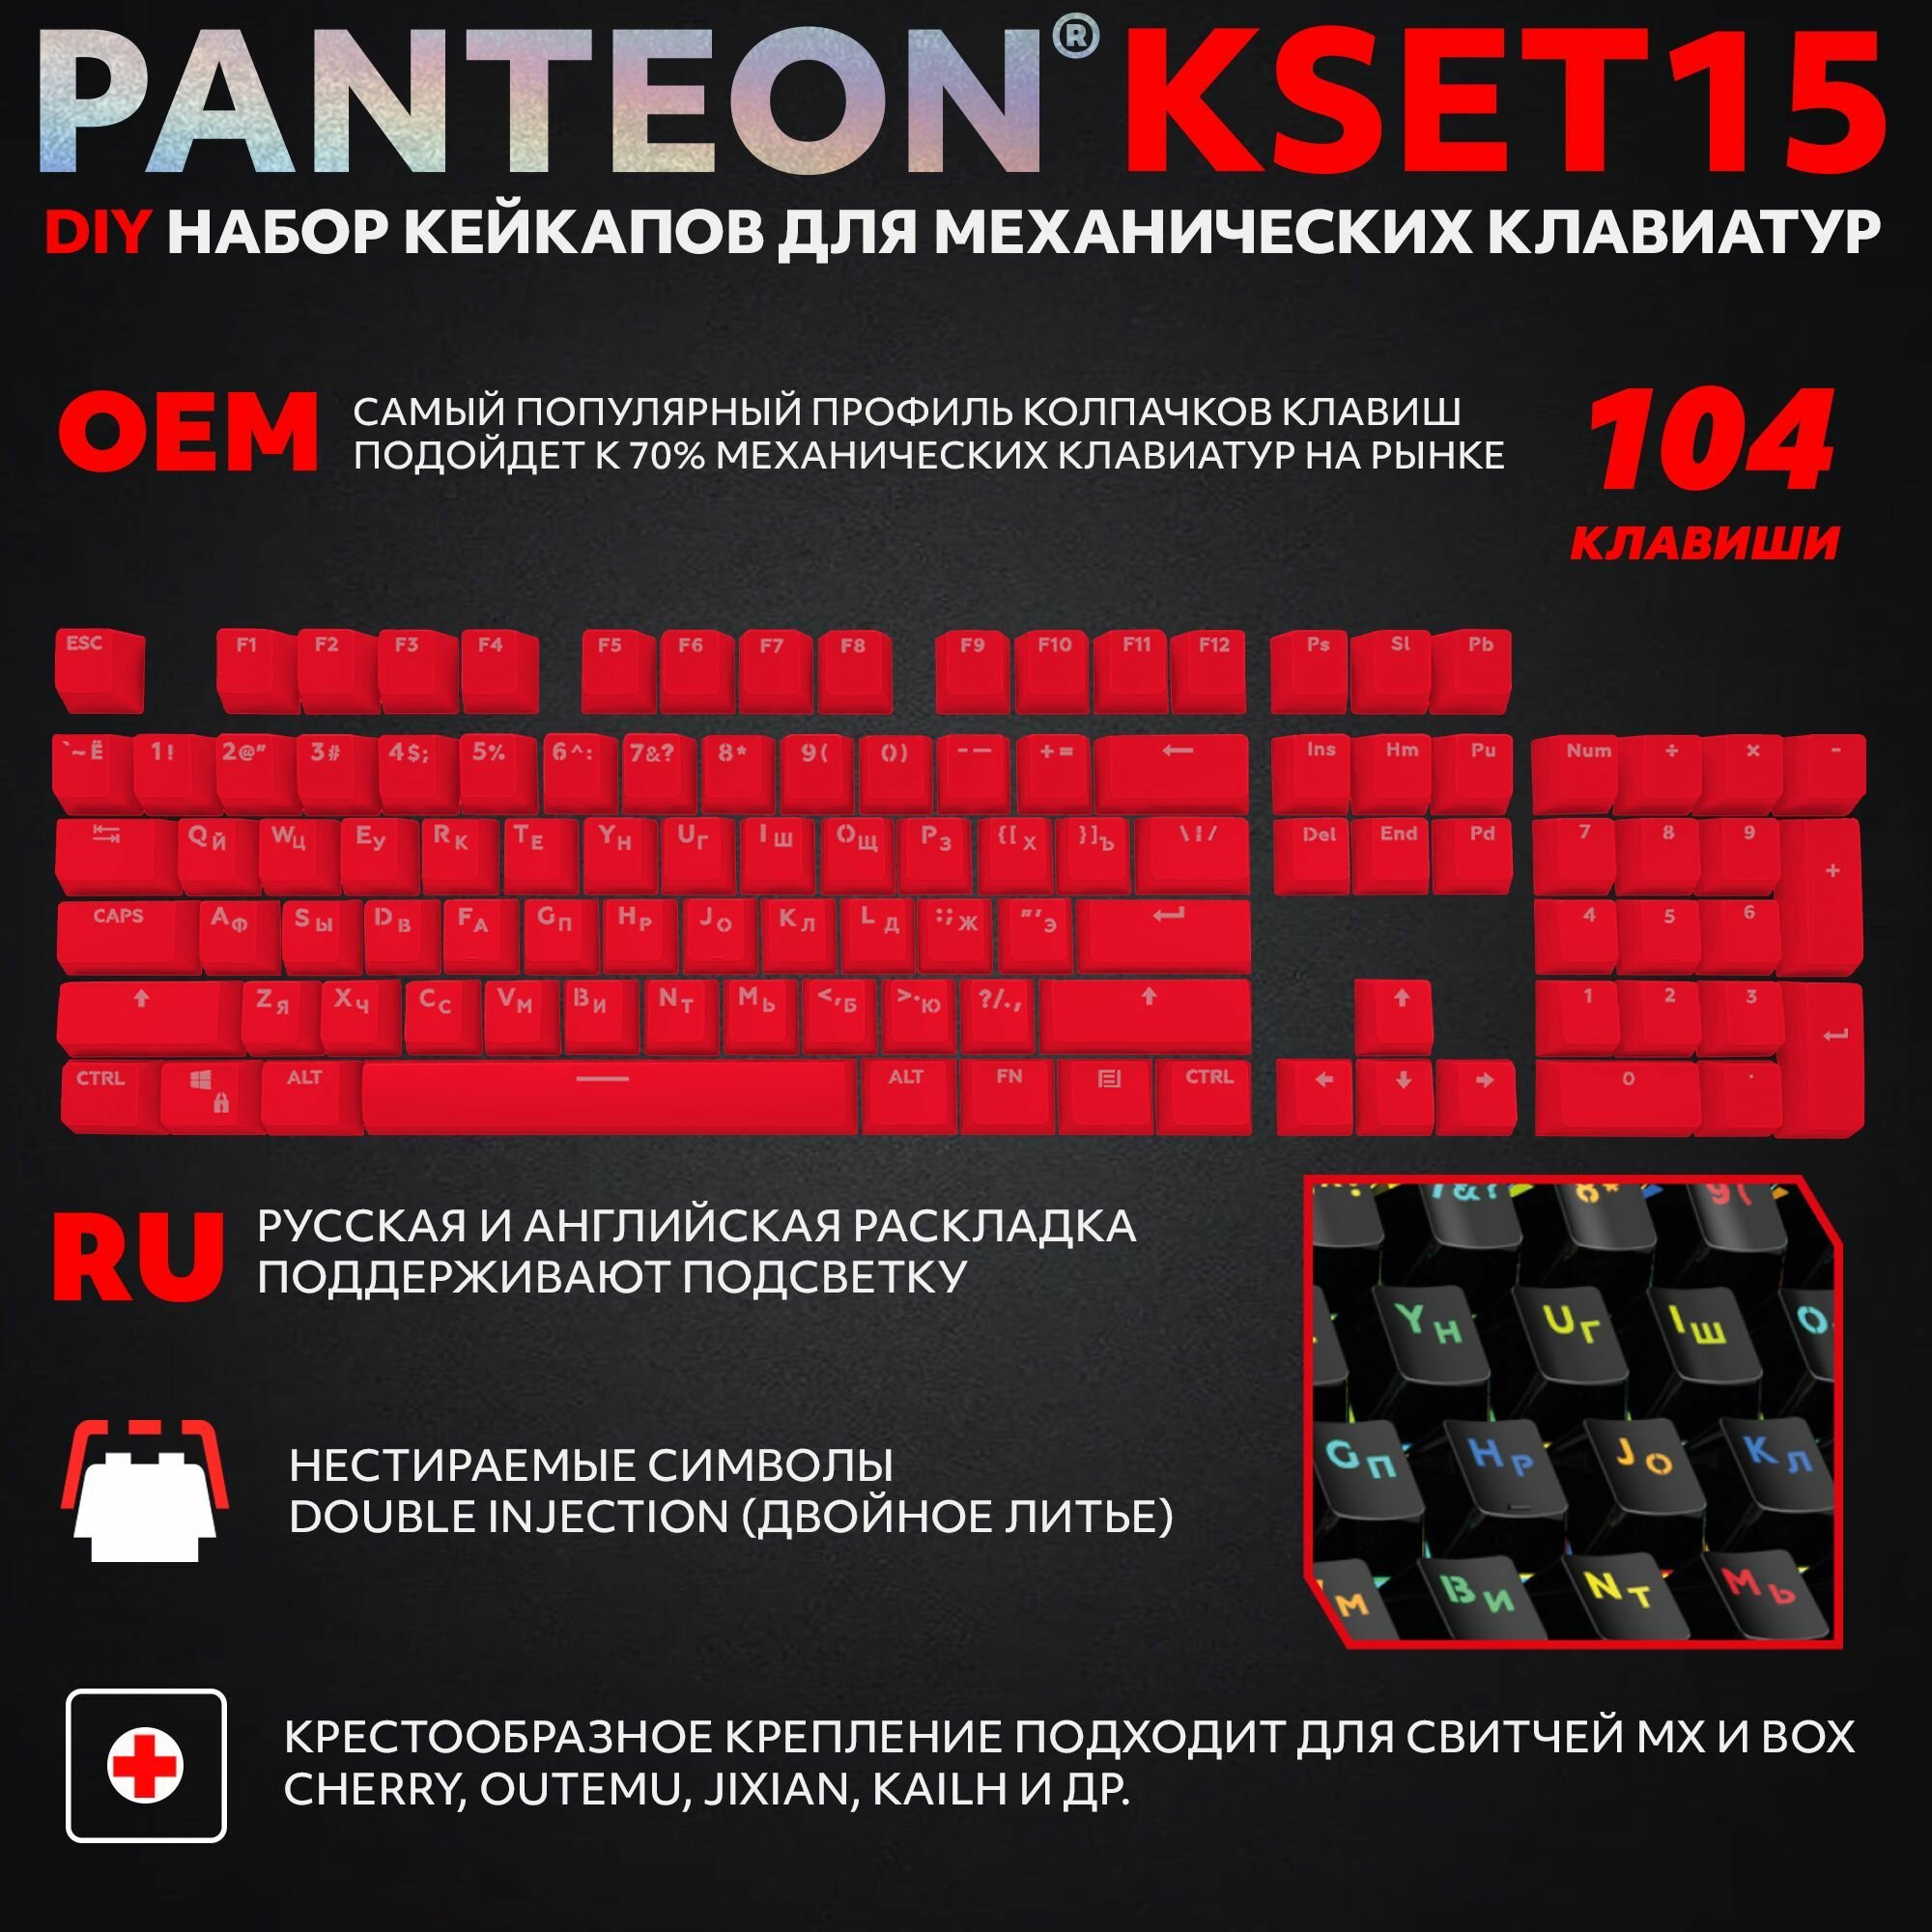 PANTEON KSET15 Yellow Универсальный набор кейкапов для механических клавиатур (104 клавиши) цвет: желтый